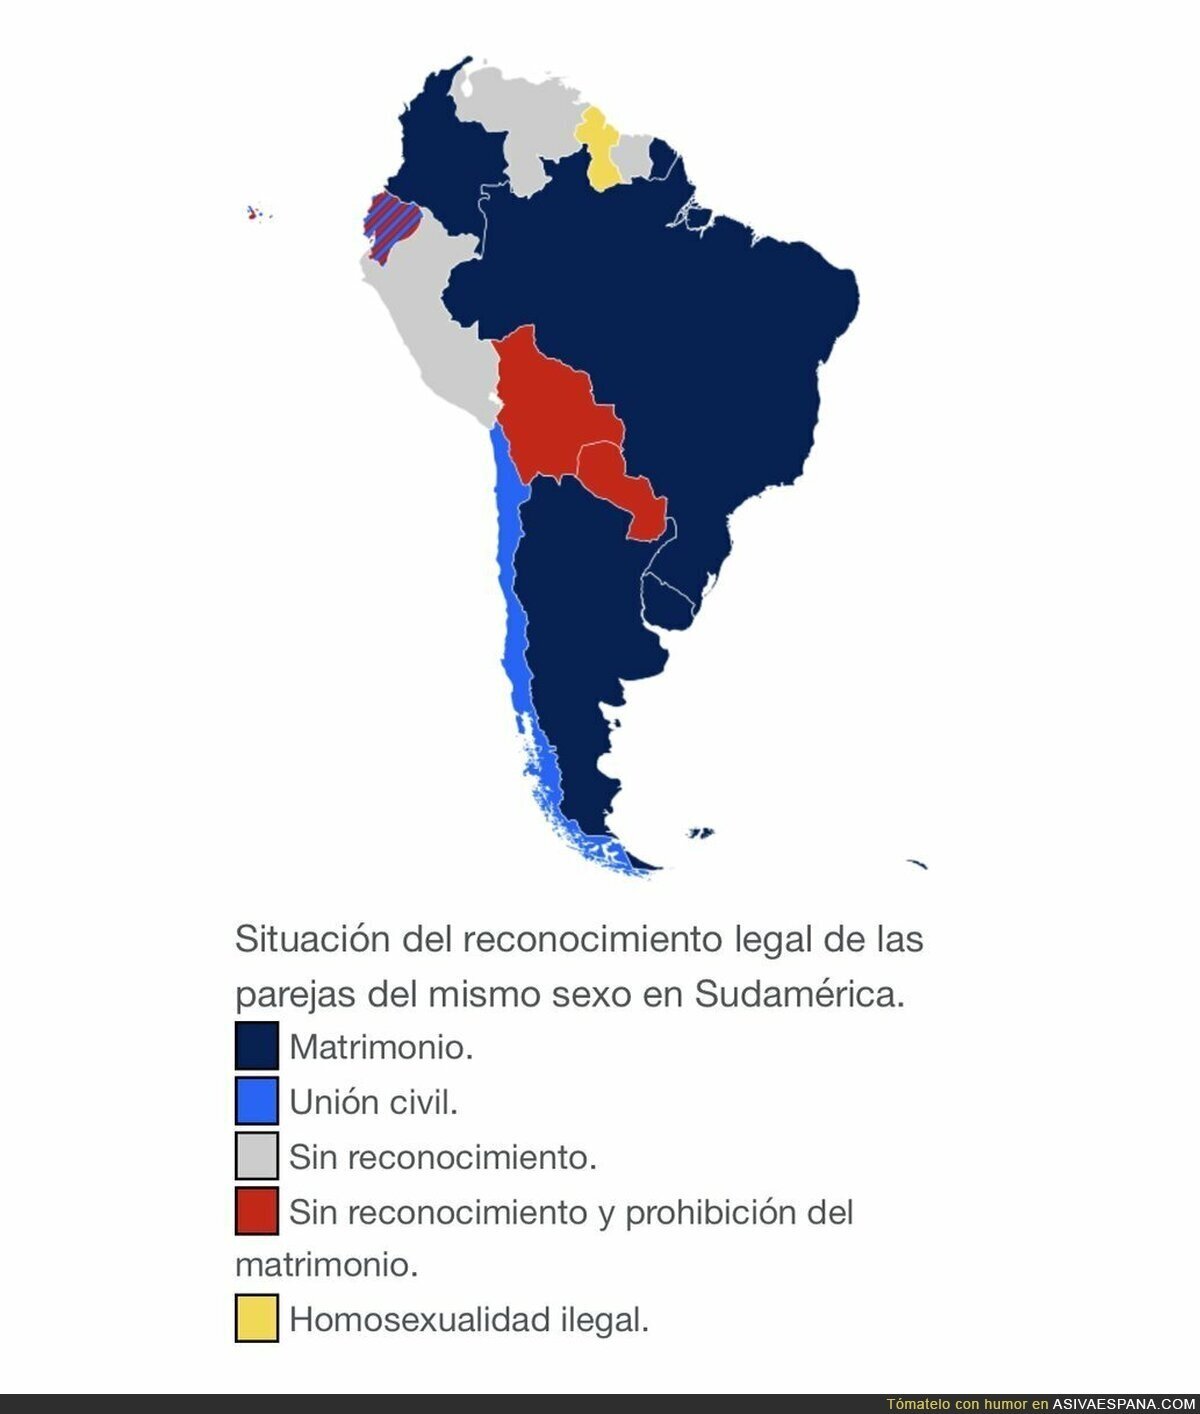 Cuando la izquierda española defiende países como Venezuela o Bolivia, esto está defendiendo